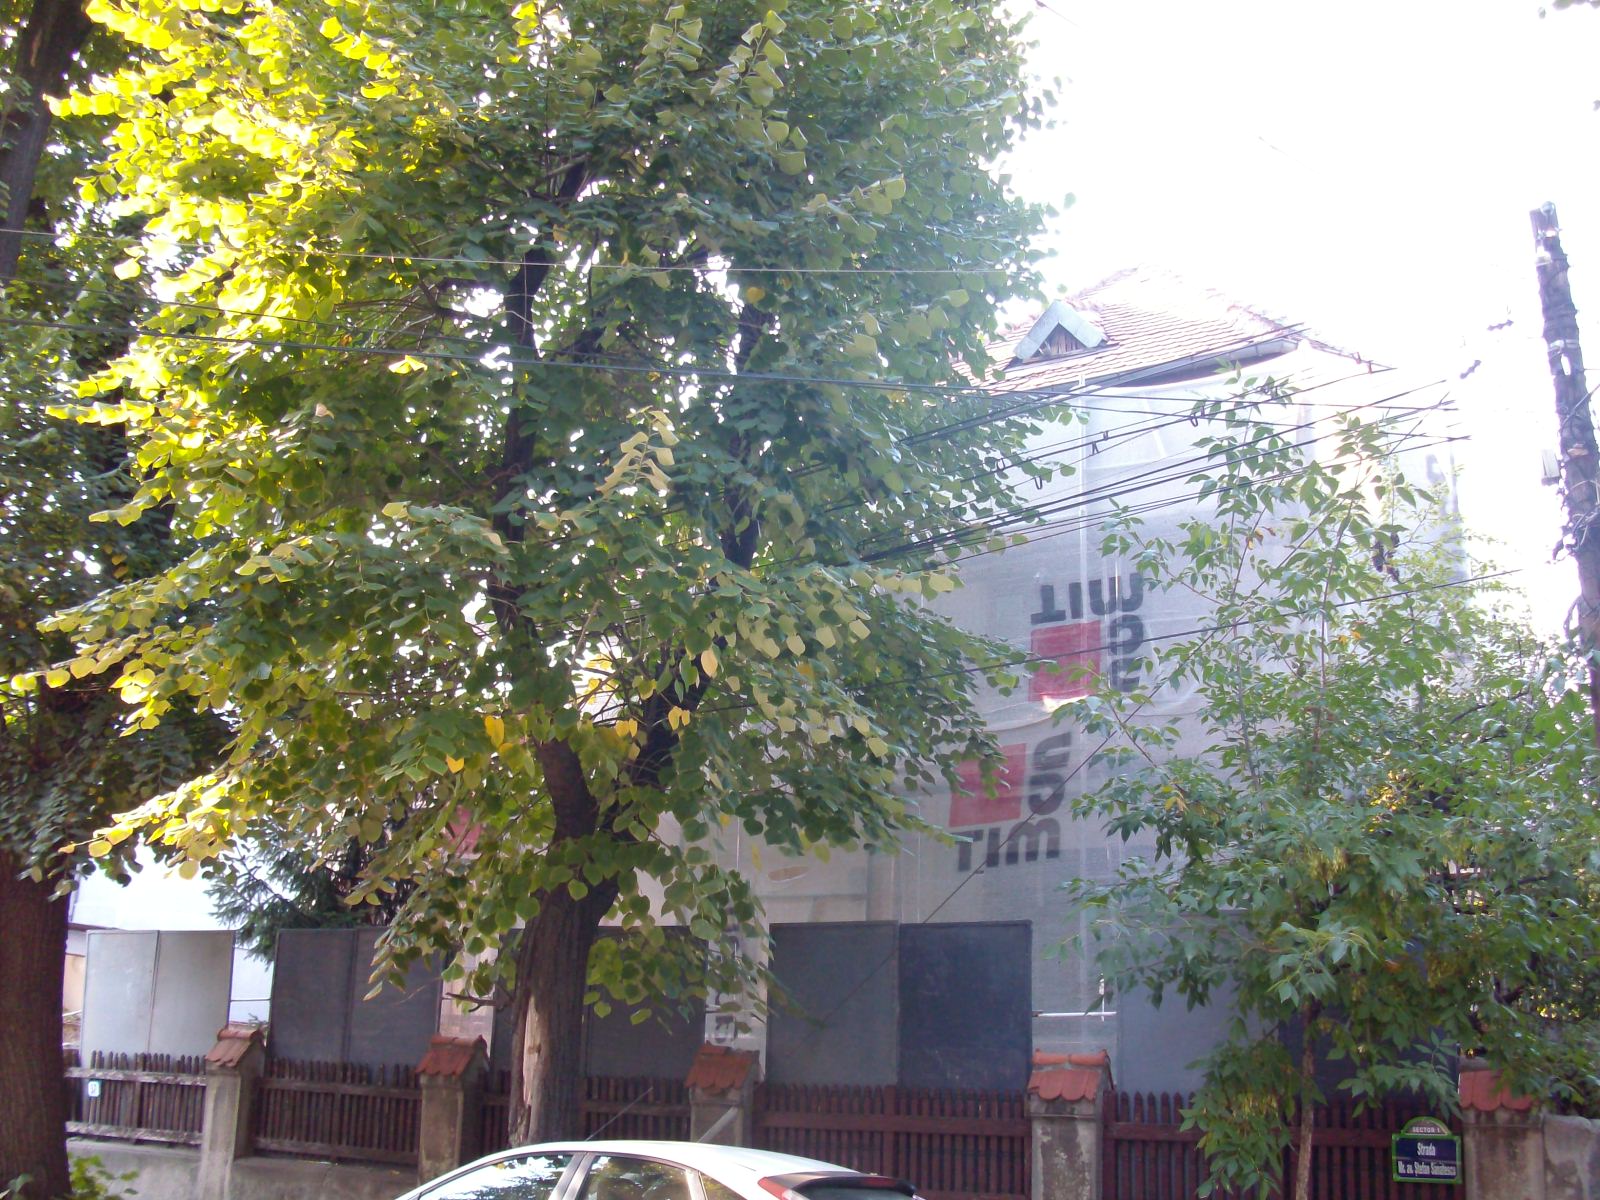 Casa a aparţinut lui Dan Amedeo Lăzărescu, iar valoarea arhitecturală a imobilului din perioada interbelică a fost ignorată prin emiterea unei autorizaţii de desfiinţare emisă de Primăria Sectorului 1, care se bazează, la rândul ei, pe un aviz emis de Dir